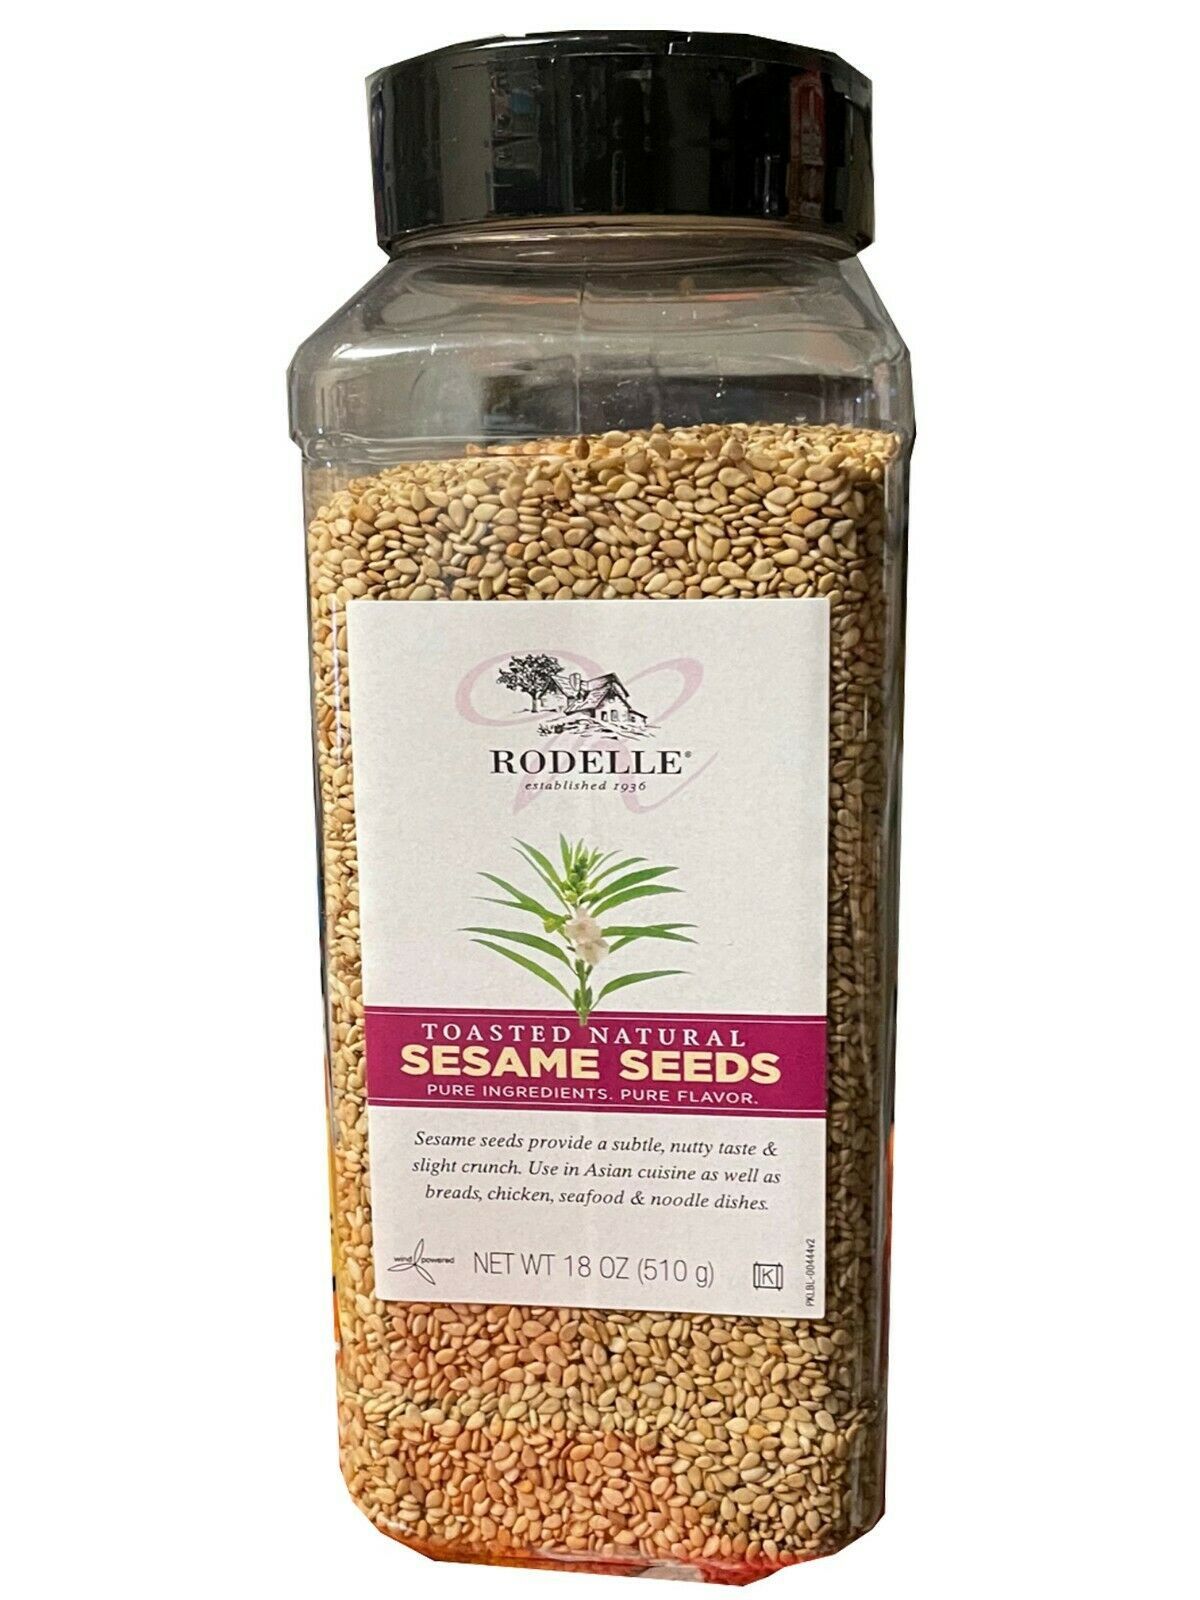  Rodelle Toasted Natural Sesame Seeds, 18oz  - $16.36